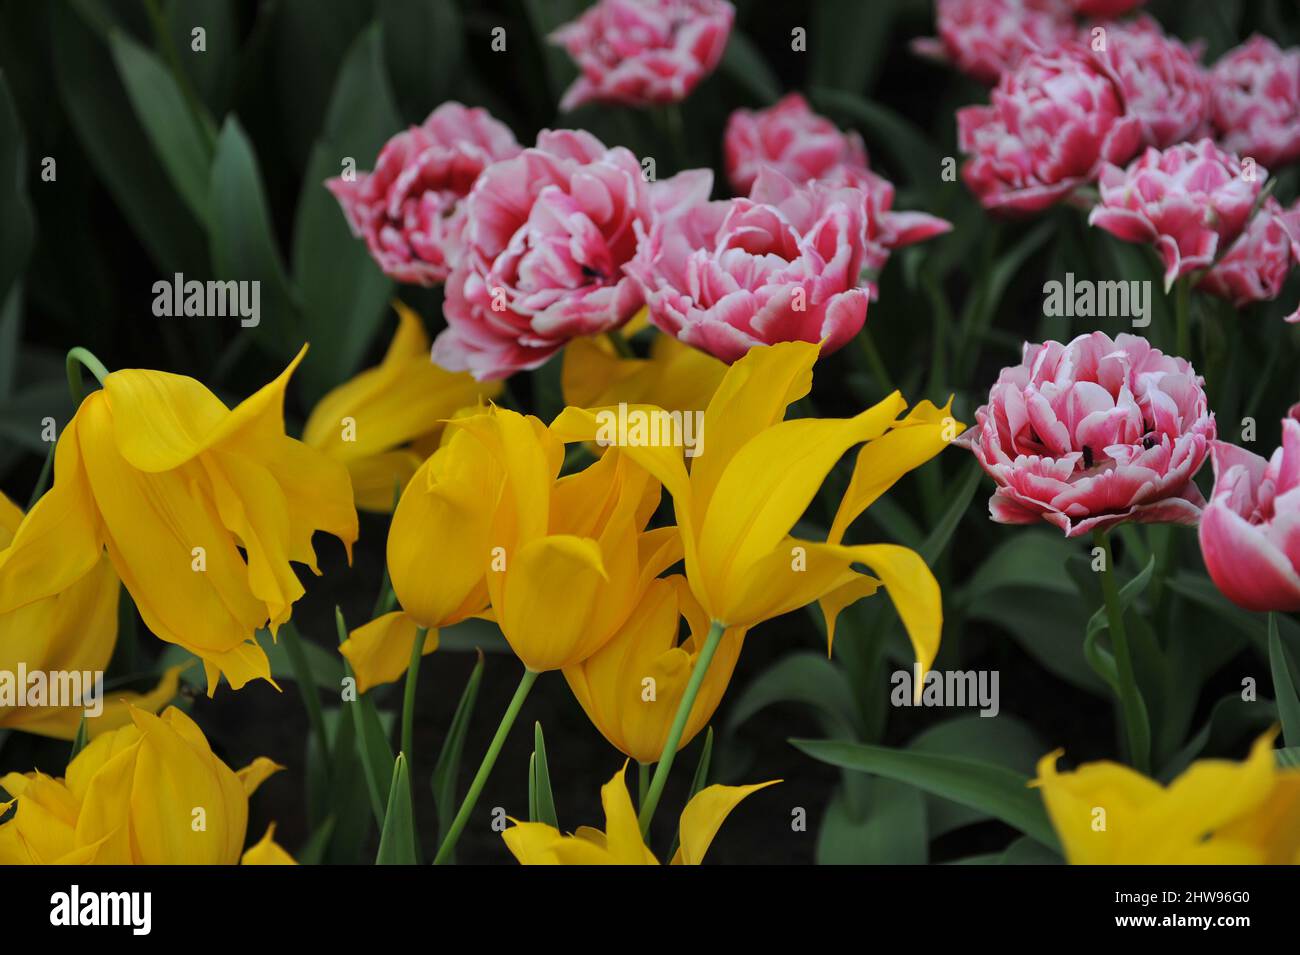 Tulipán amarillo de flor de lirio (Tulipa) La Perla y rojo y blanco de flor de peonías Doble tulipán tardío Deseo deslumbrante florecer en un jardín en abril Foto de stock